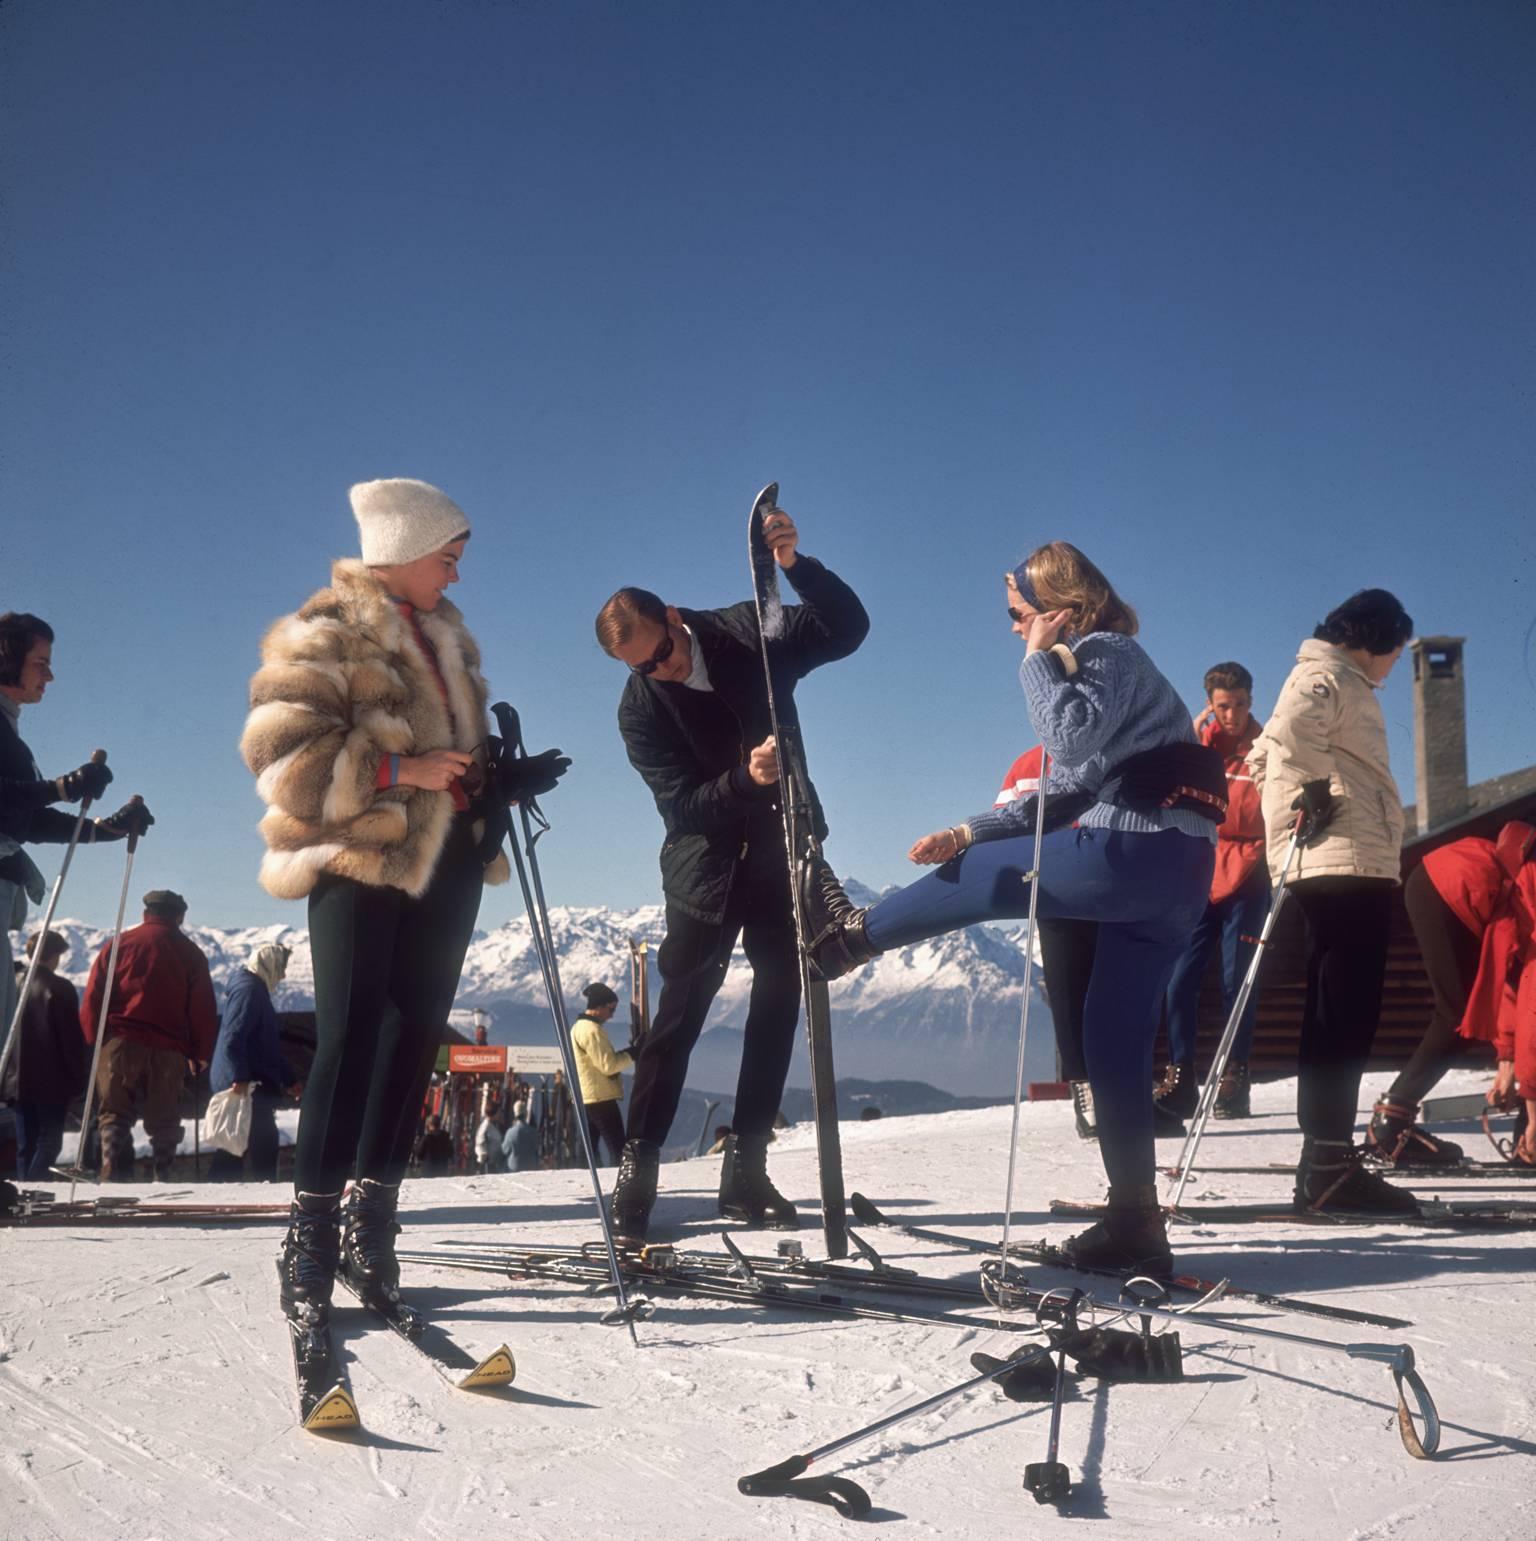 Verbier-Skifahrer" von Slim Aarons

Skifahrer in Verbier, 1964. 

Elegante Skifahrer in modischer Skikleidung, darunter eine junge Frau mit Pelzjacke, stellen die Skier ein und bereiten sich auf einen Tag auf den schönen Pisten vor, vor dem